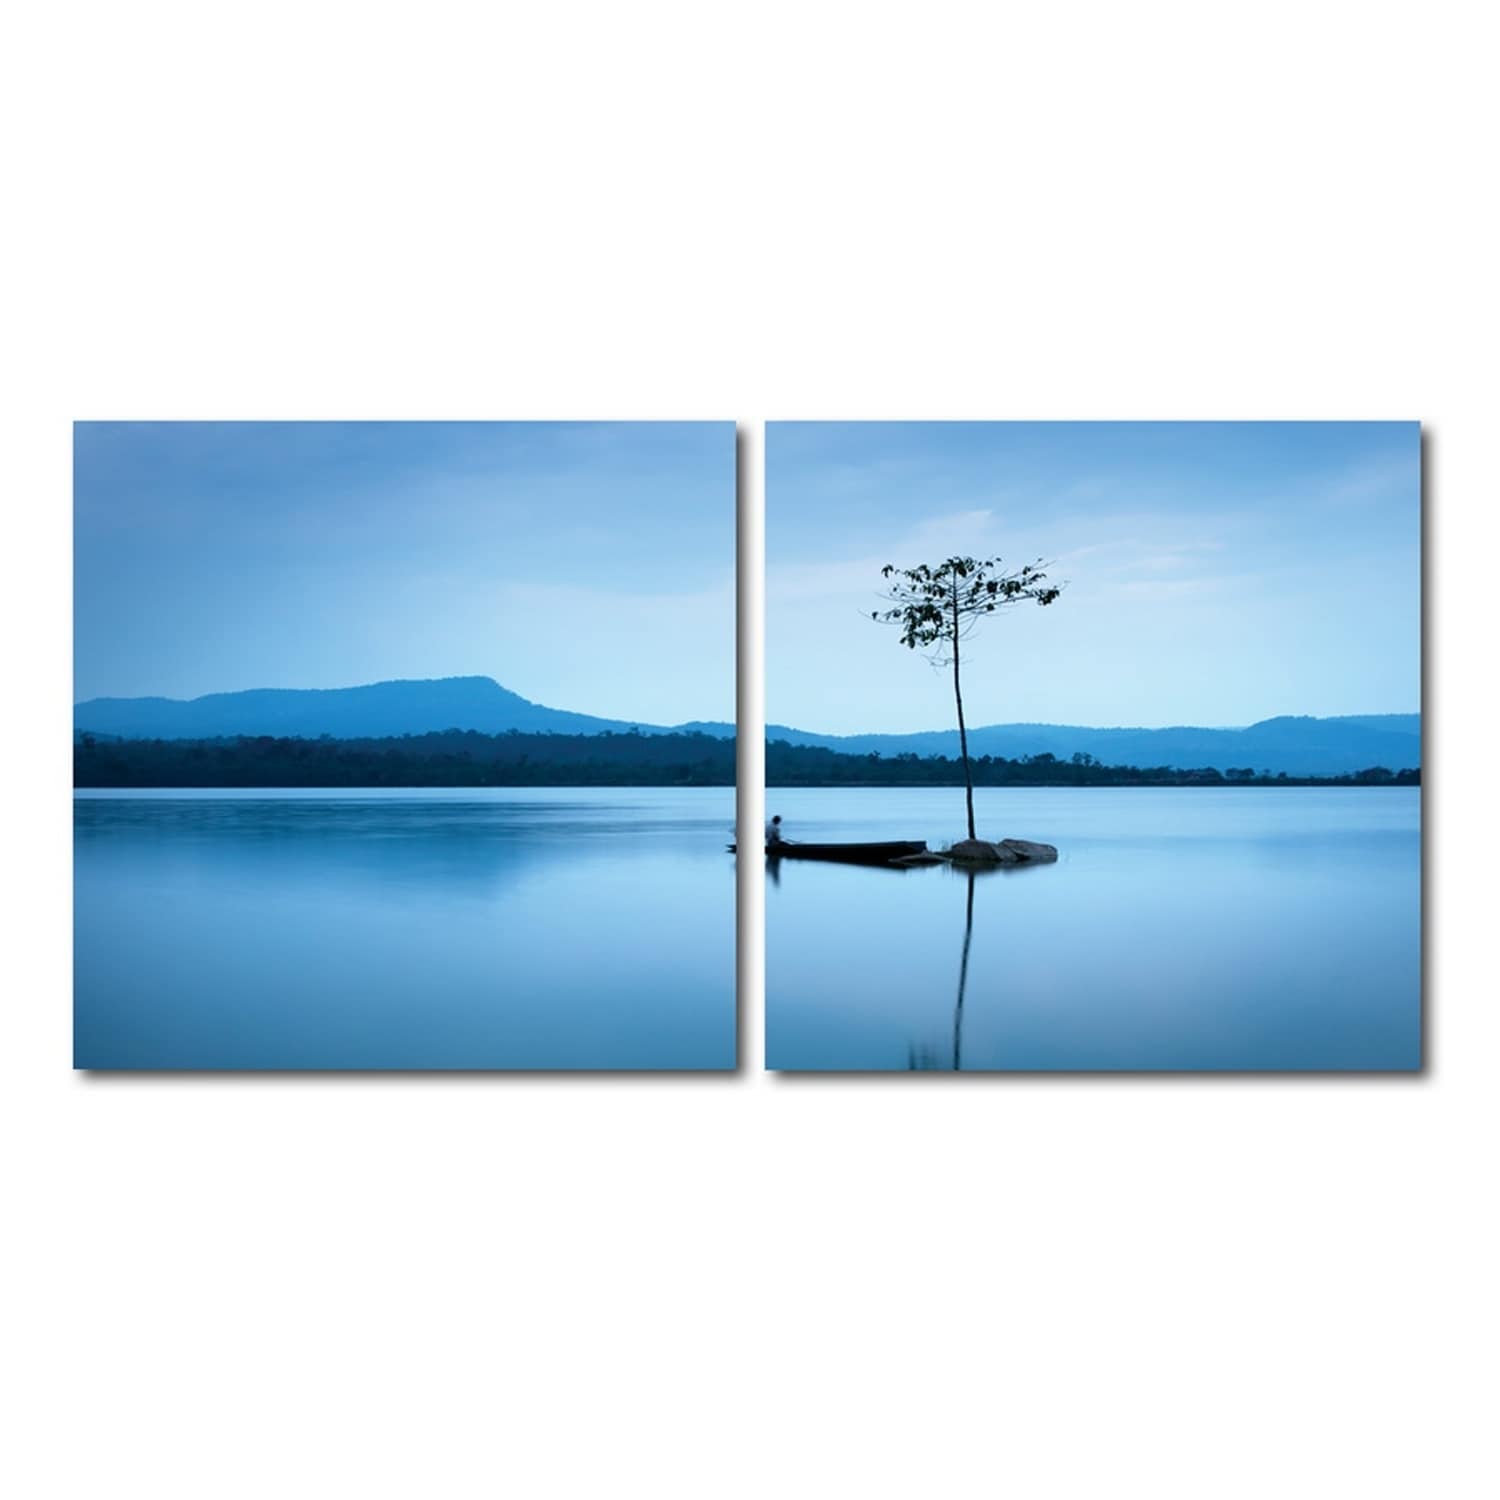 Покой 40 телефон. Акрил деревья озеро. Модульная картина kartina Style умиротворение воды.